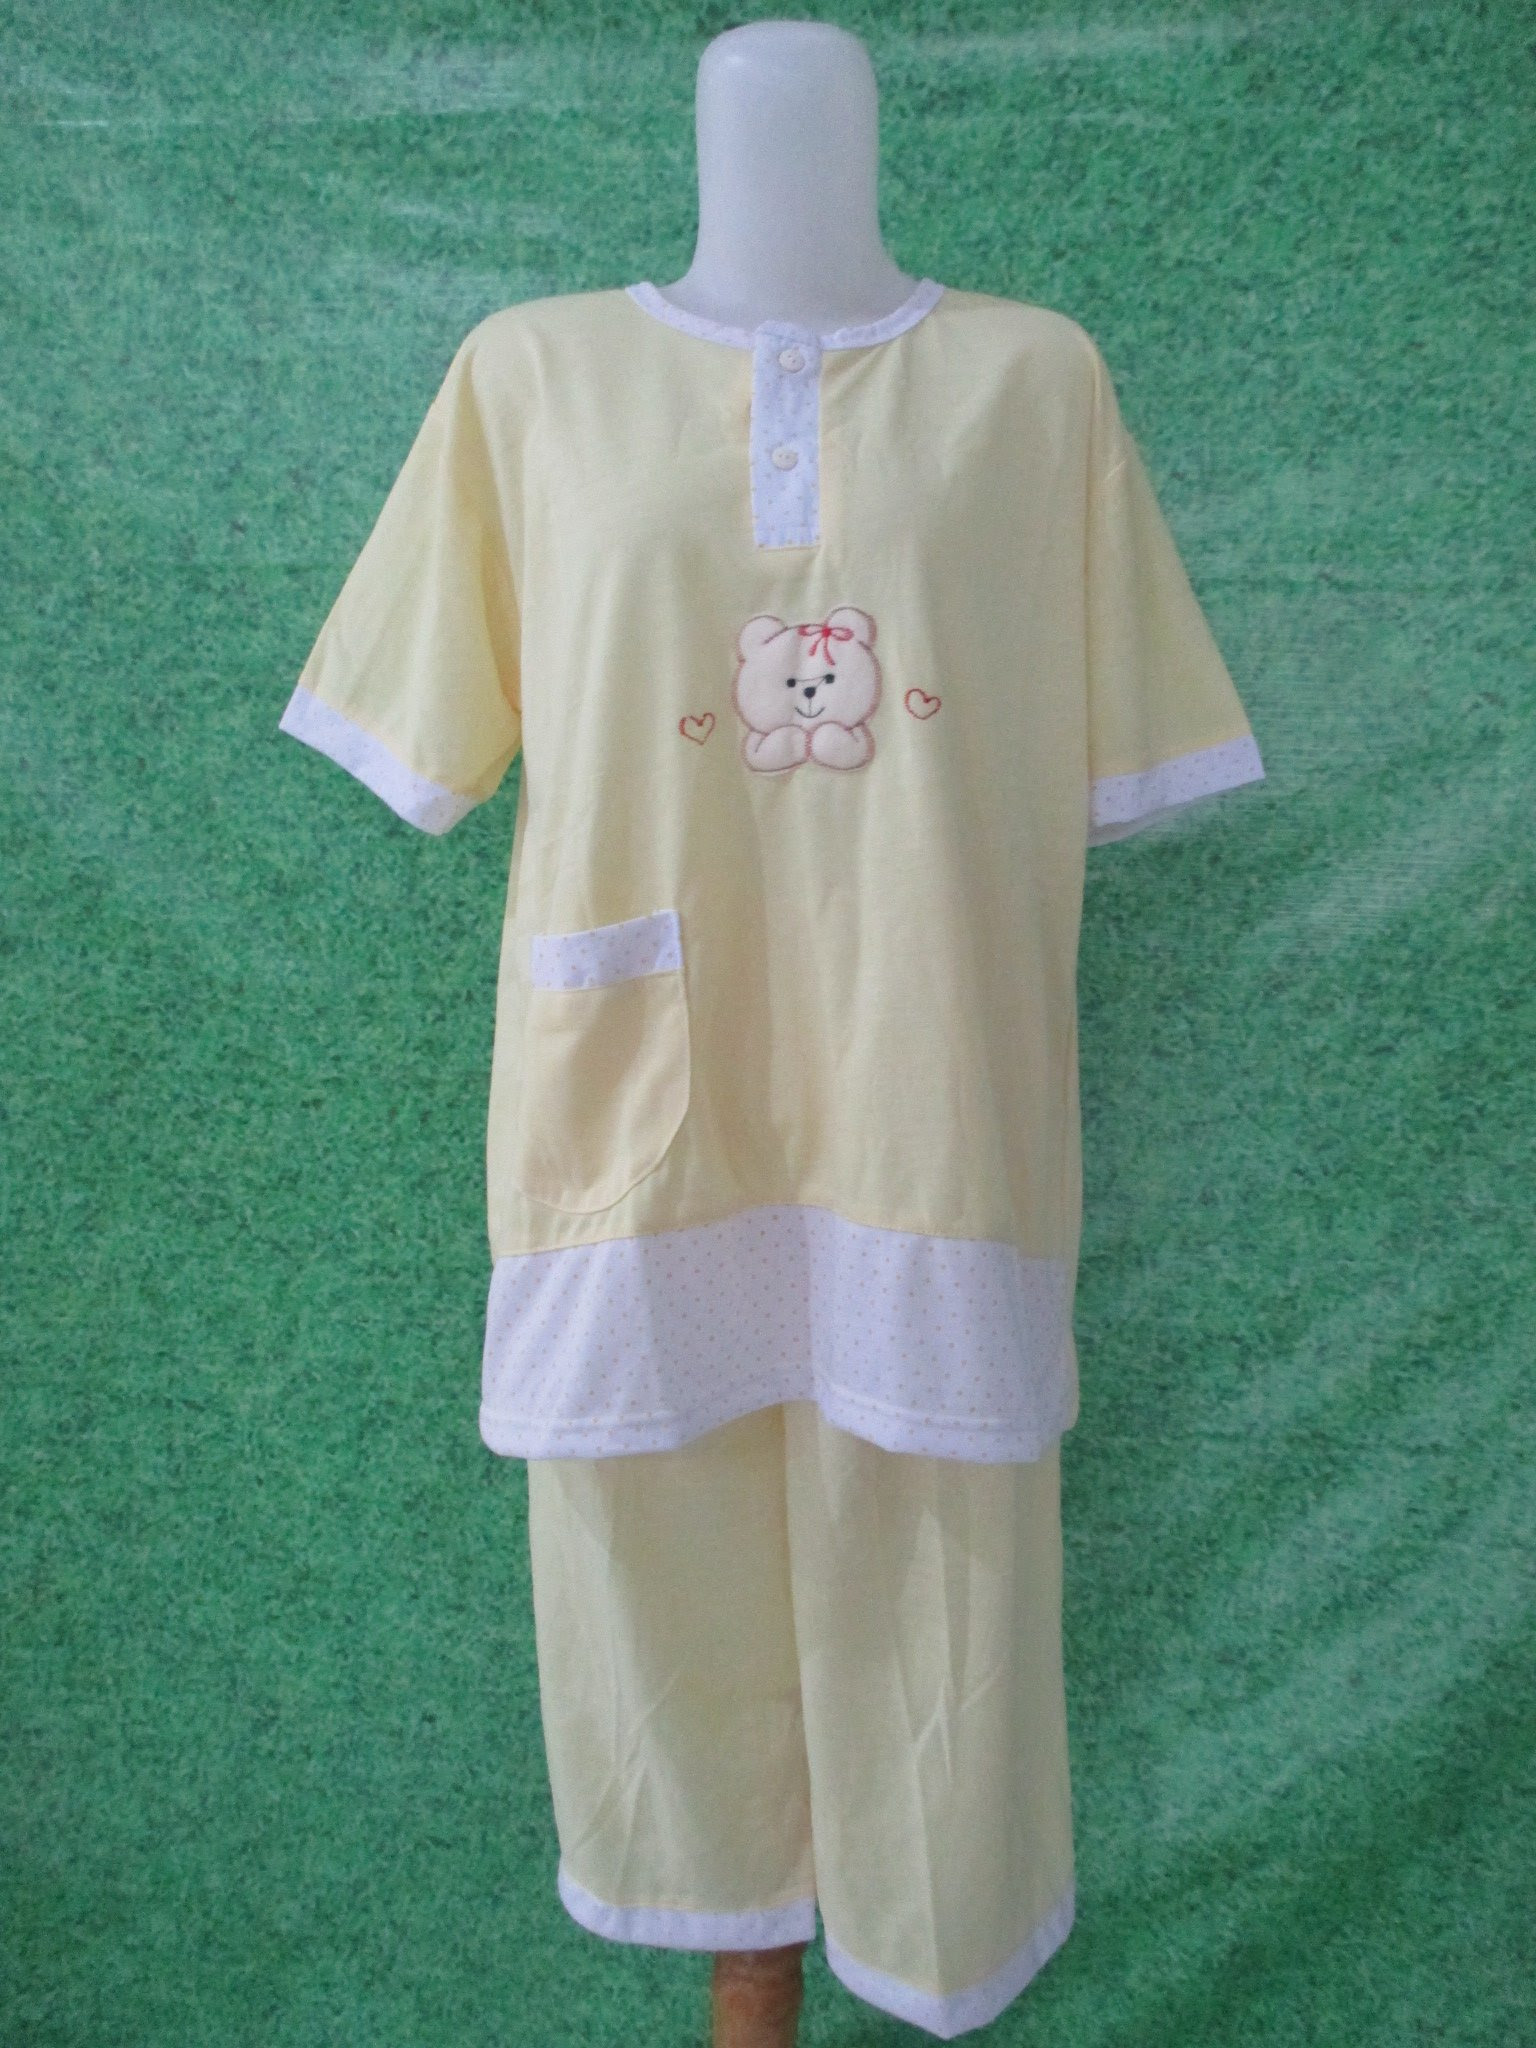 Baju Tidur Katun 3 4 Jumbo Pusat Grosir Baju Pakaian 